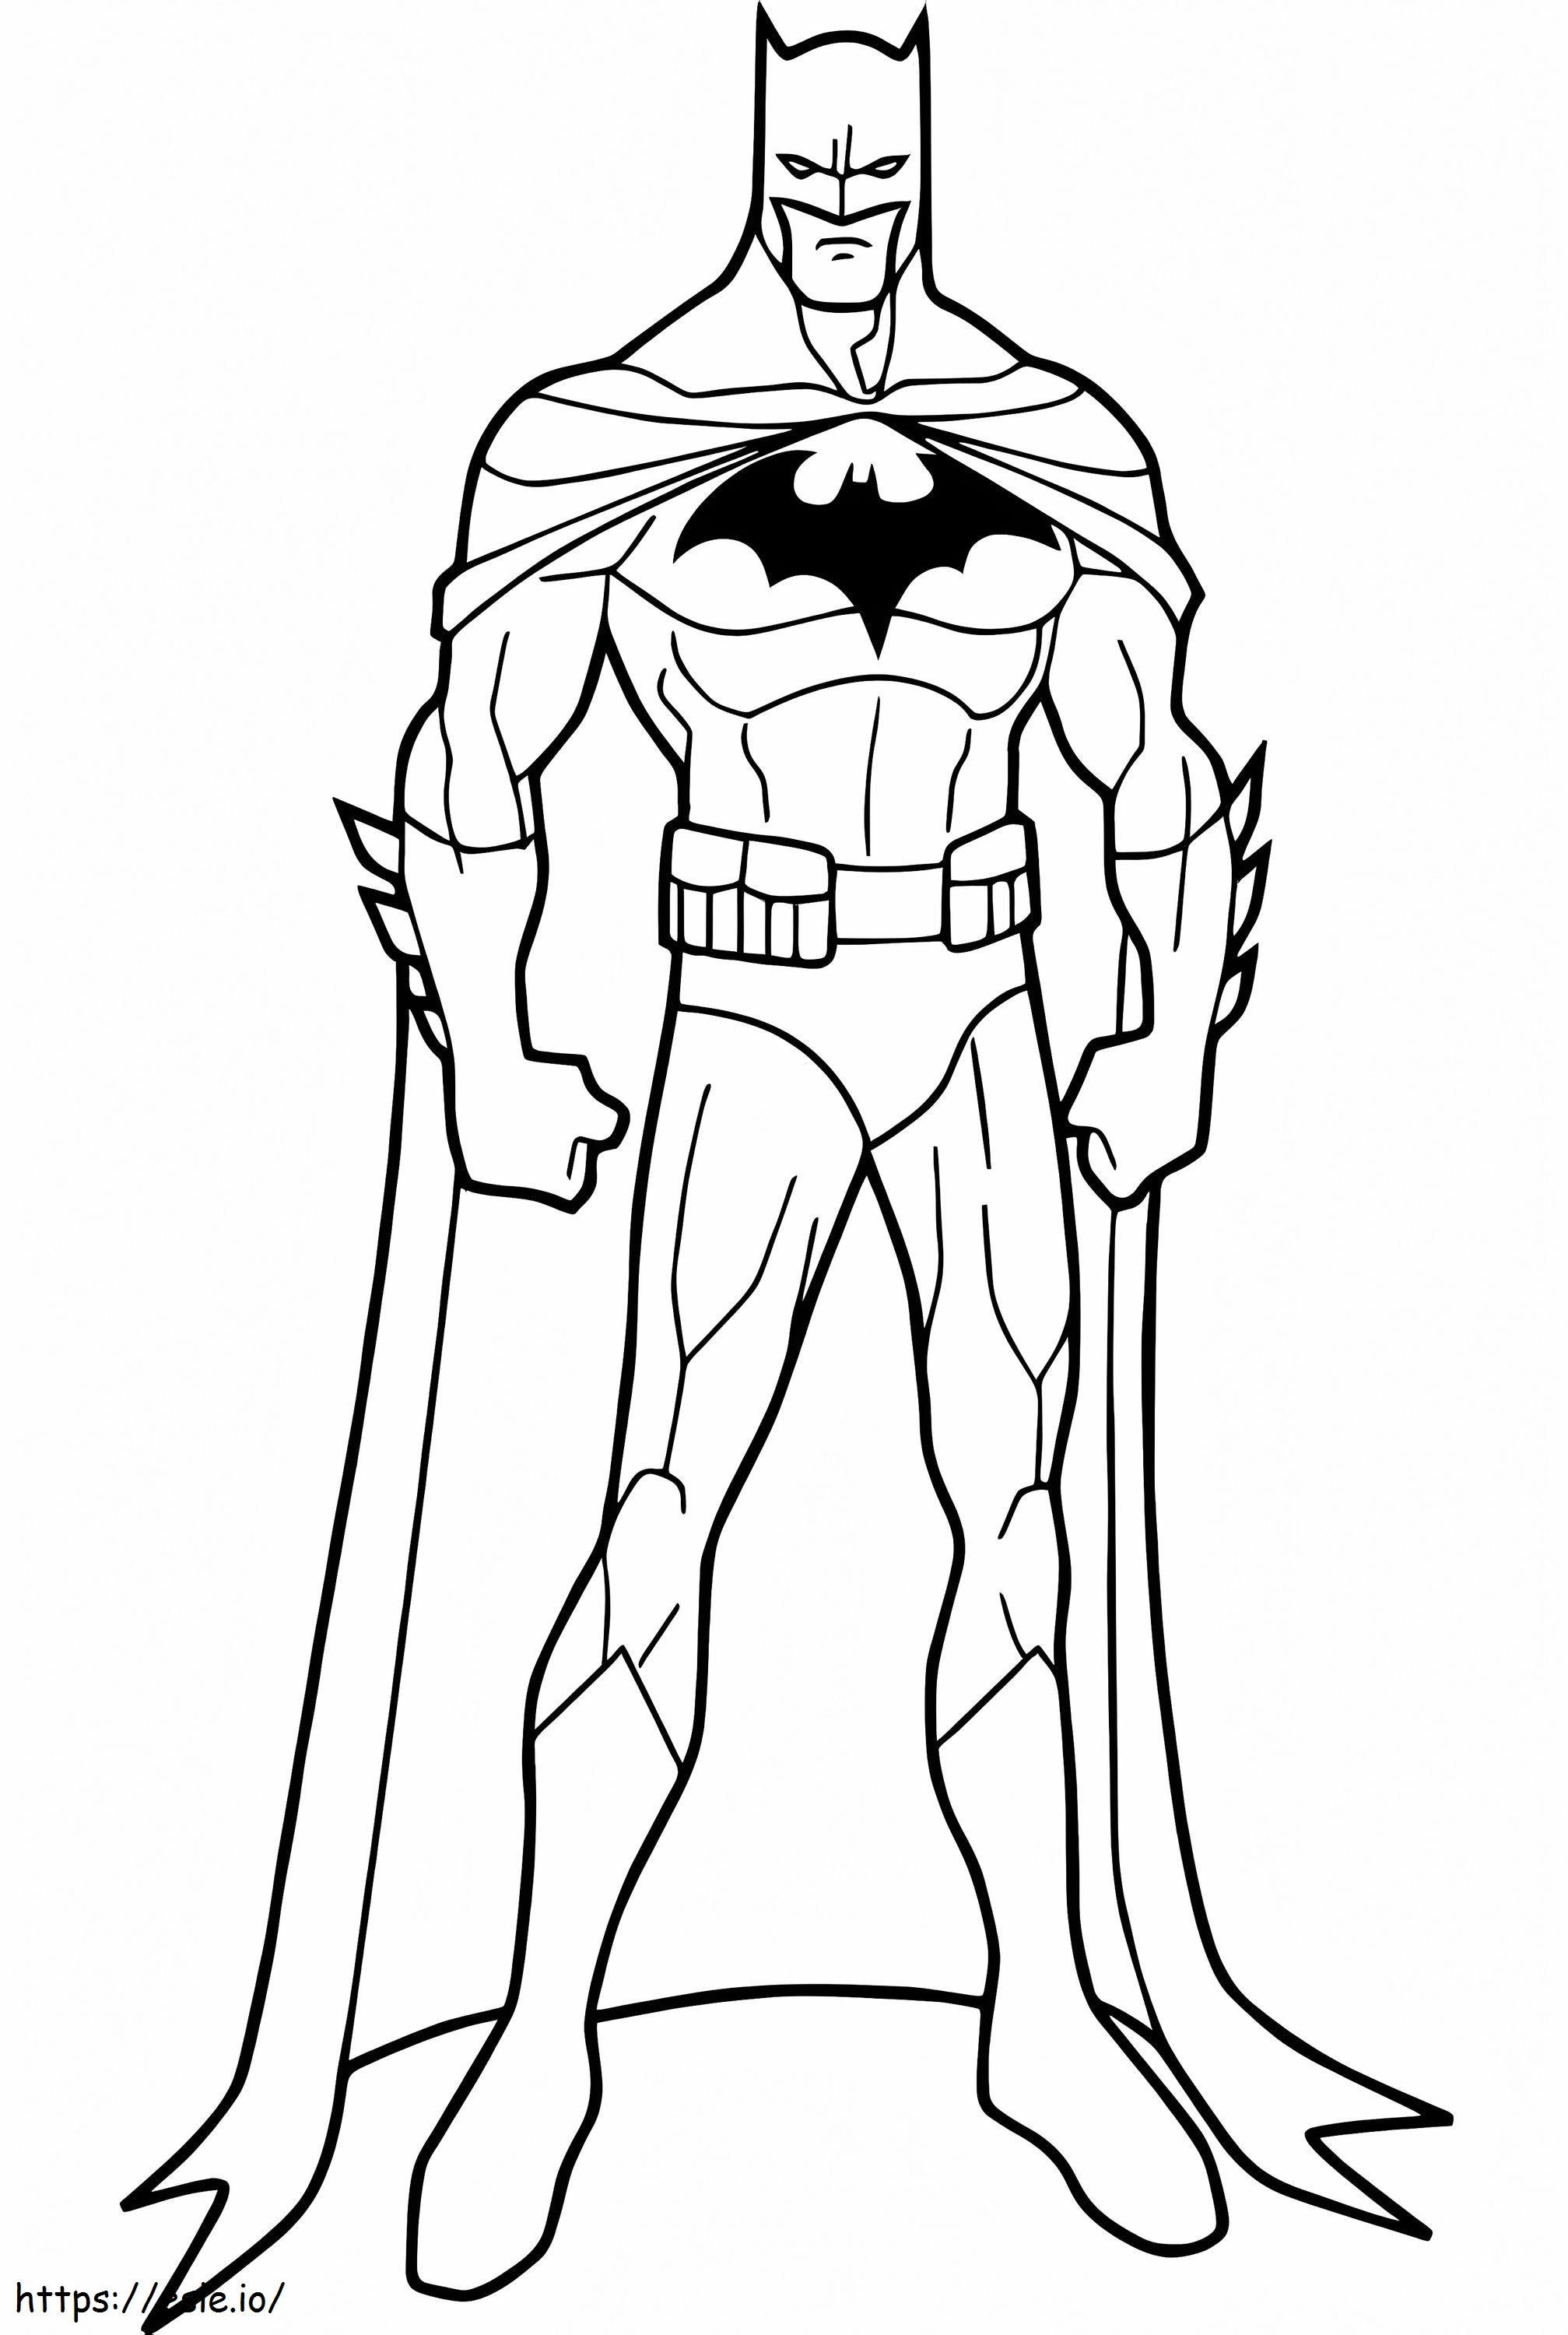 Postura de Batman para colorear